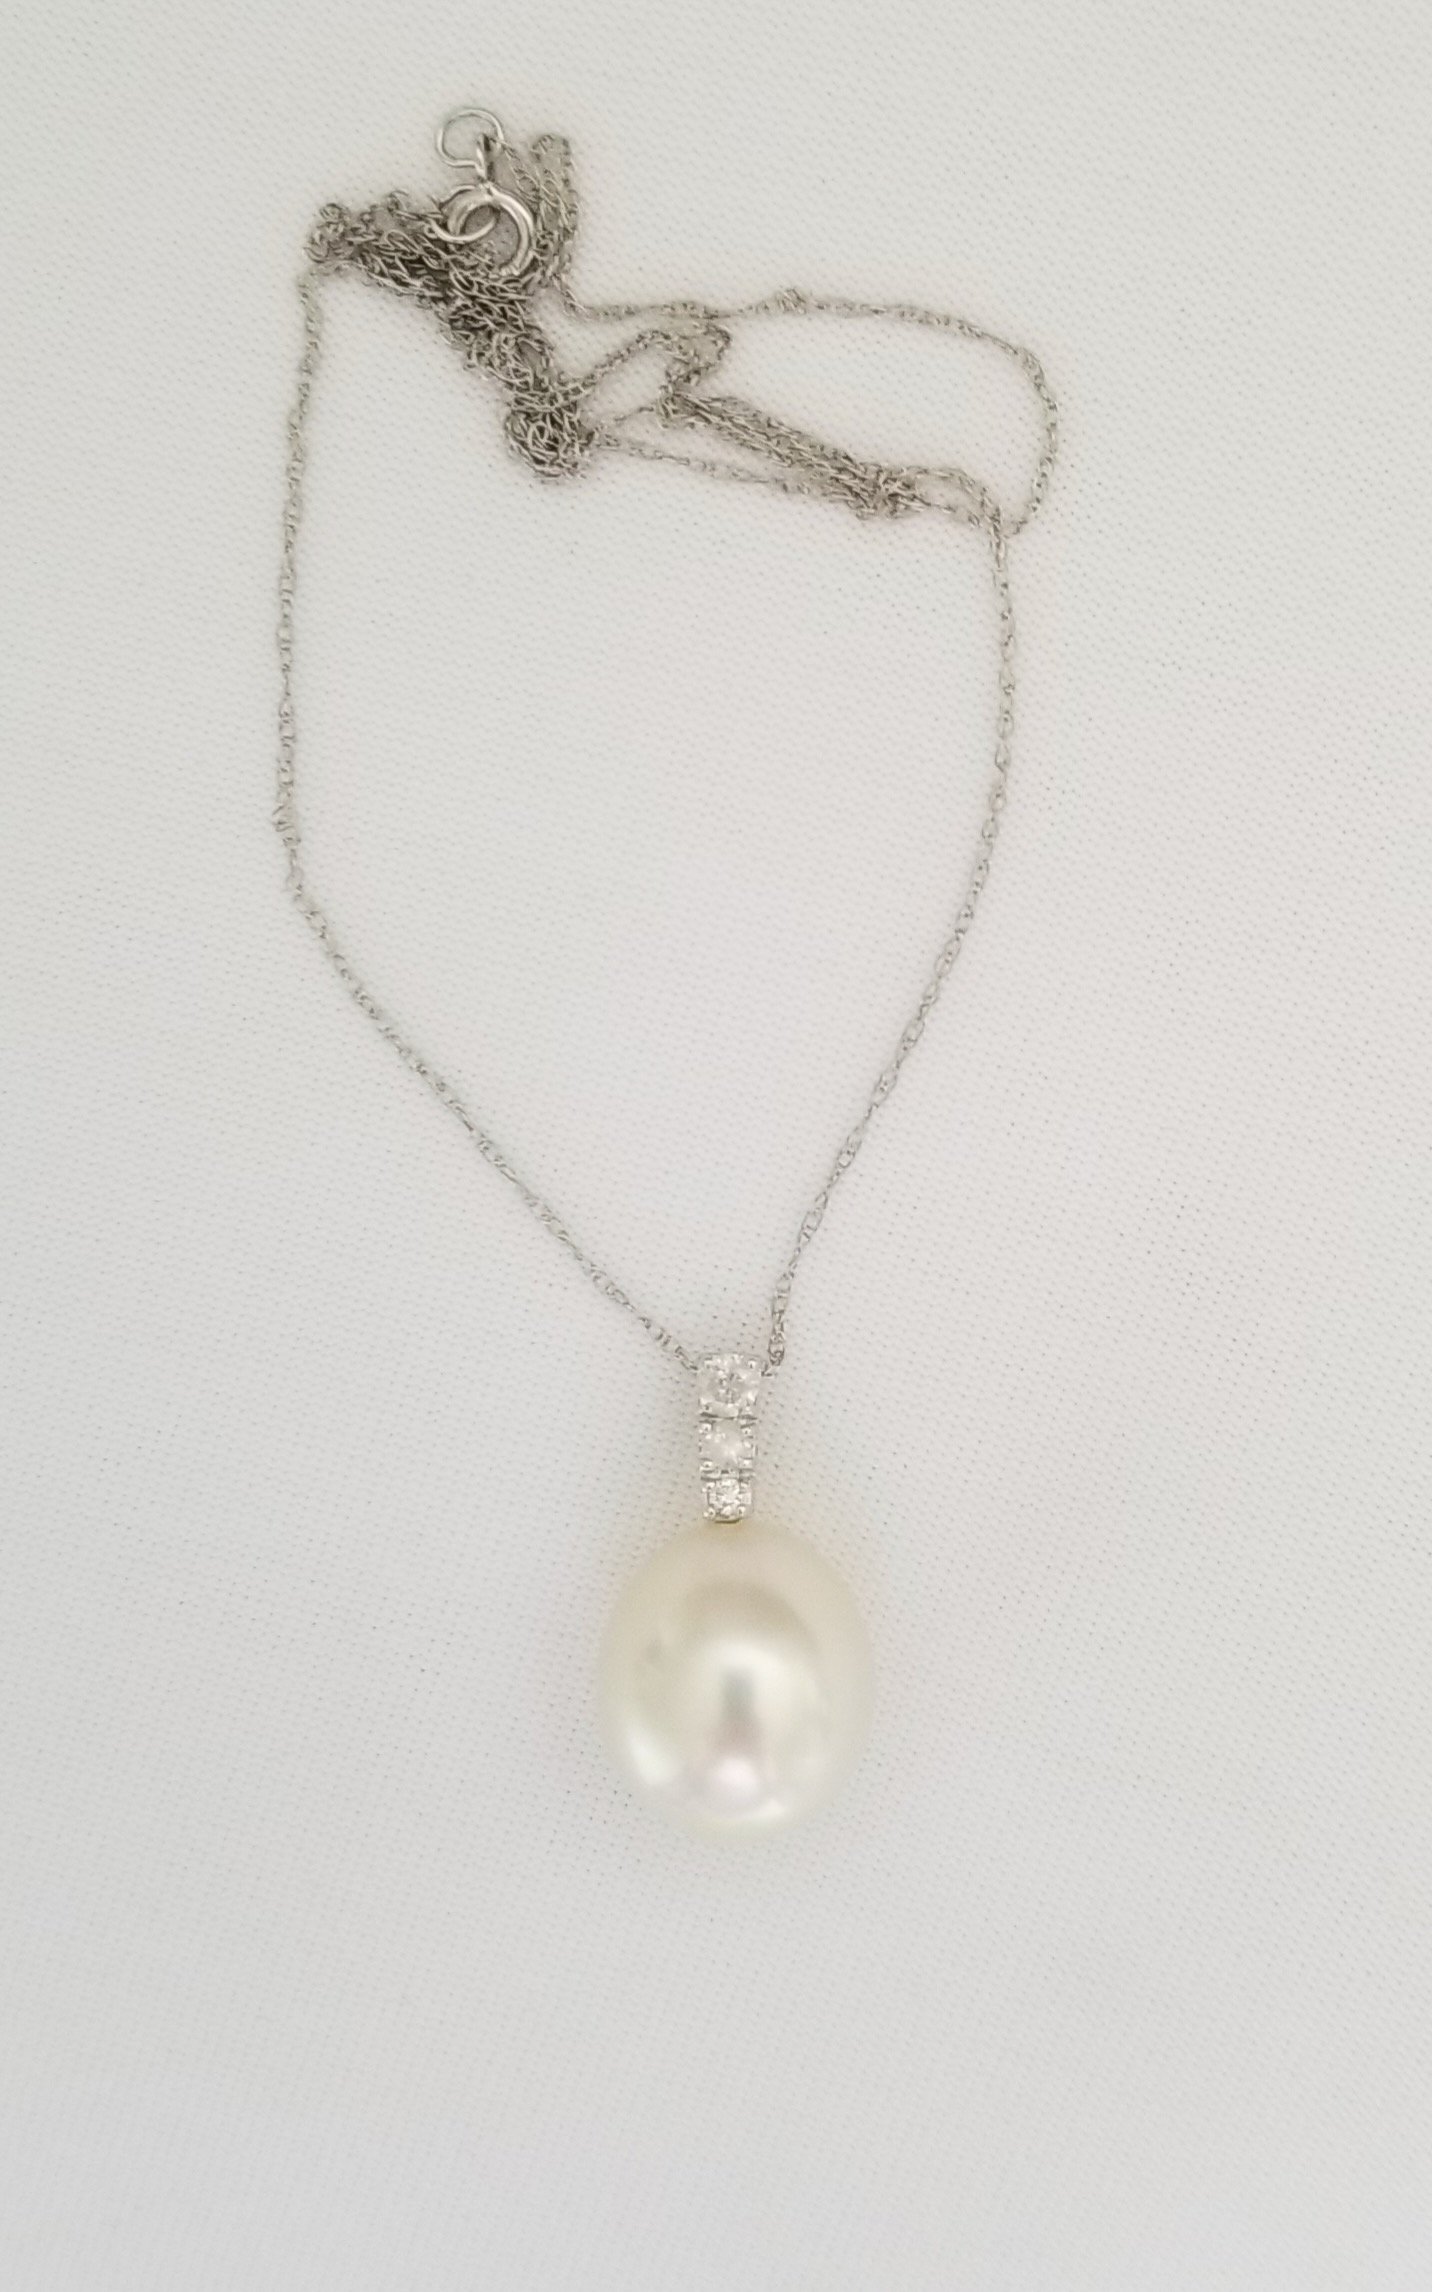 South Sea pearl and diamond pendant